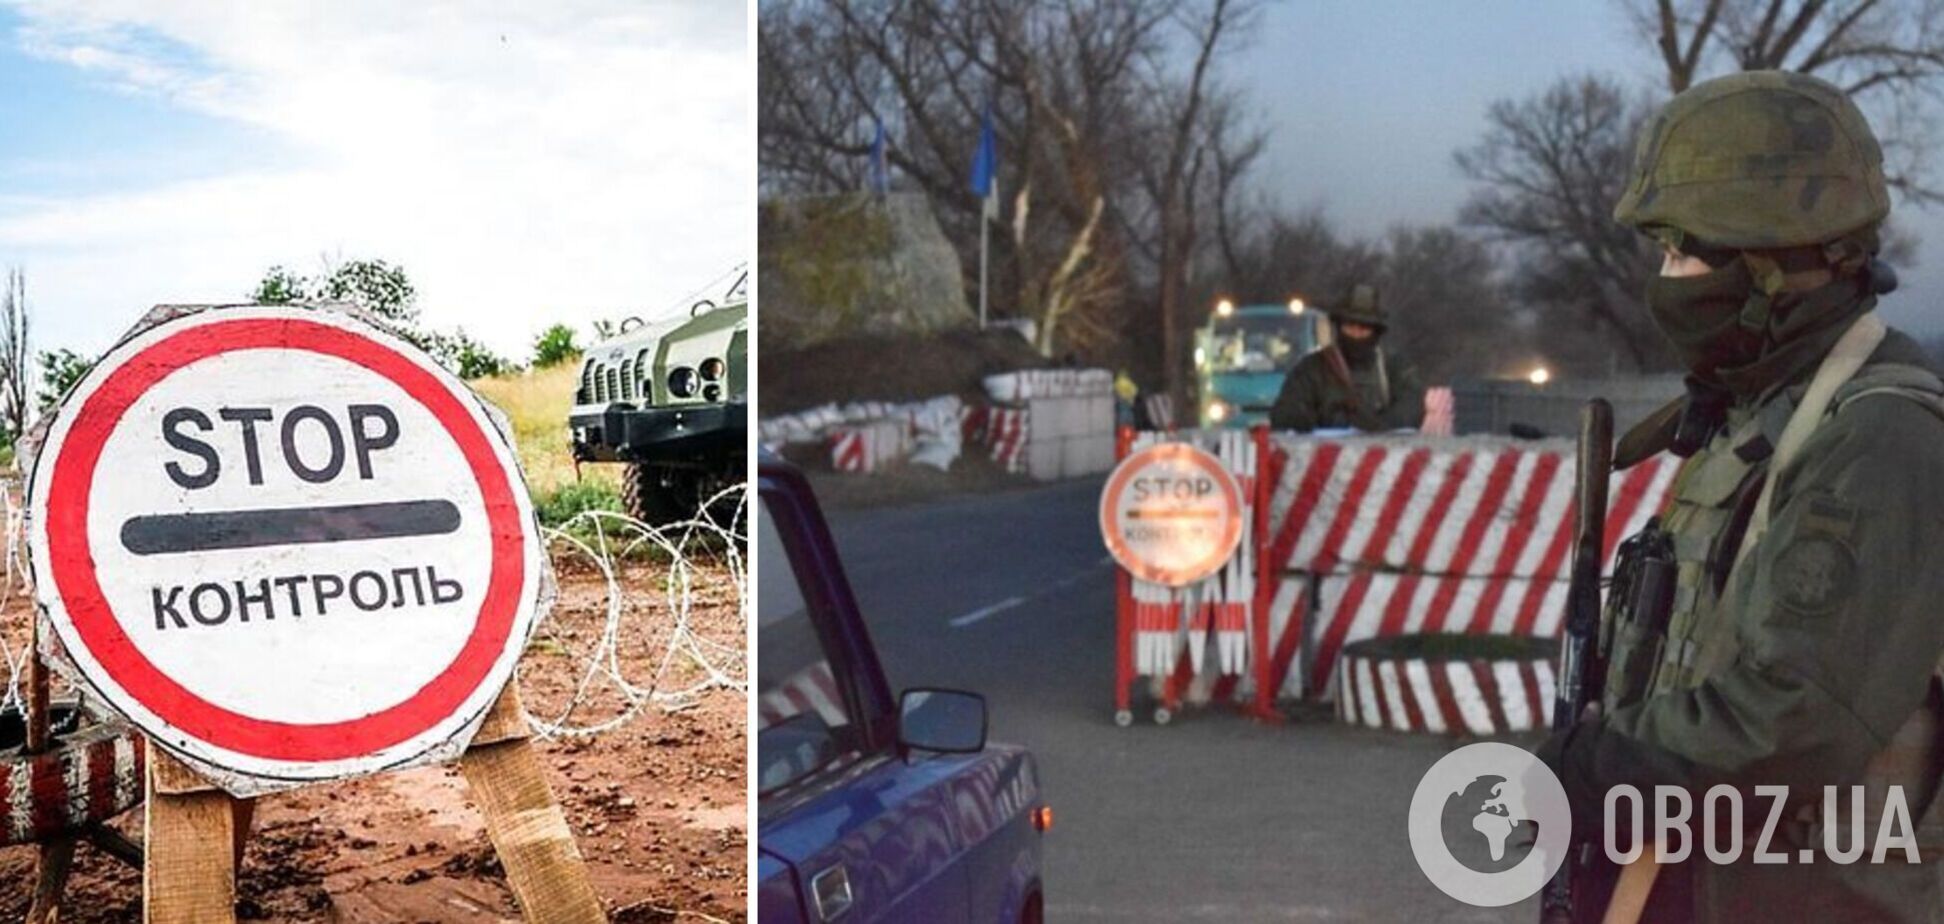 В Донецкой области мужчина на авто хотел прорваться через блокпост: нацгвардейцы применили оружие